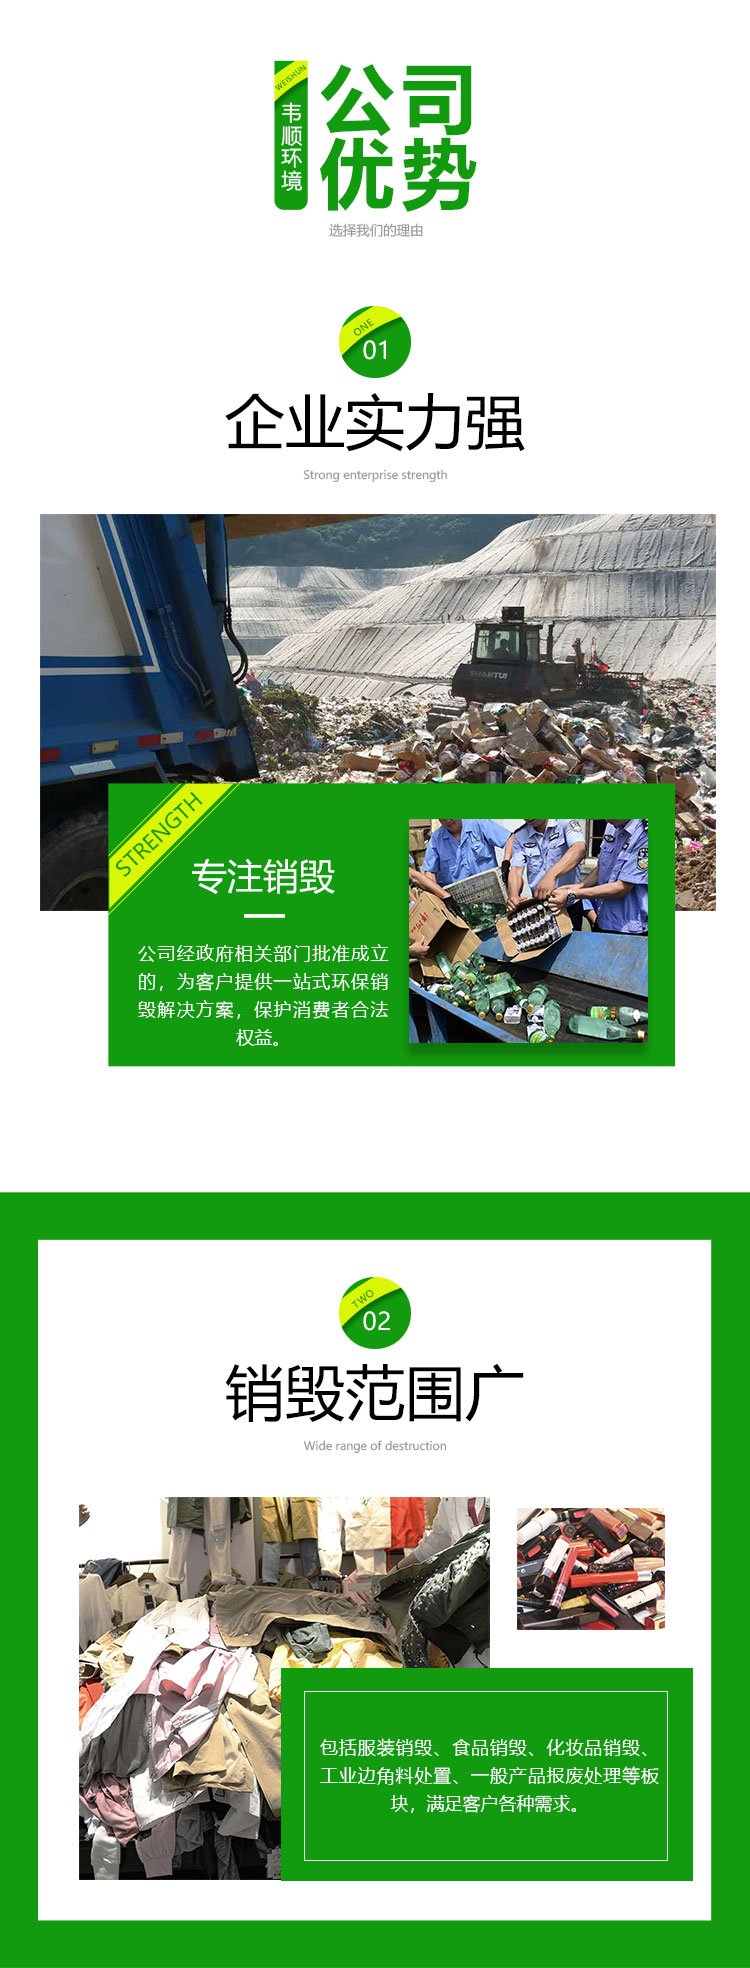 深圳龙华区冻品报废公司进口货物销毁中心